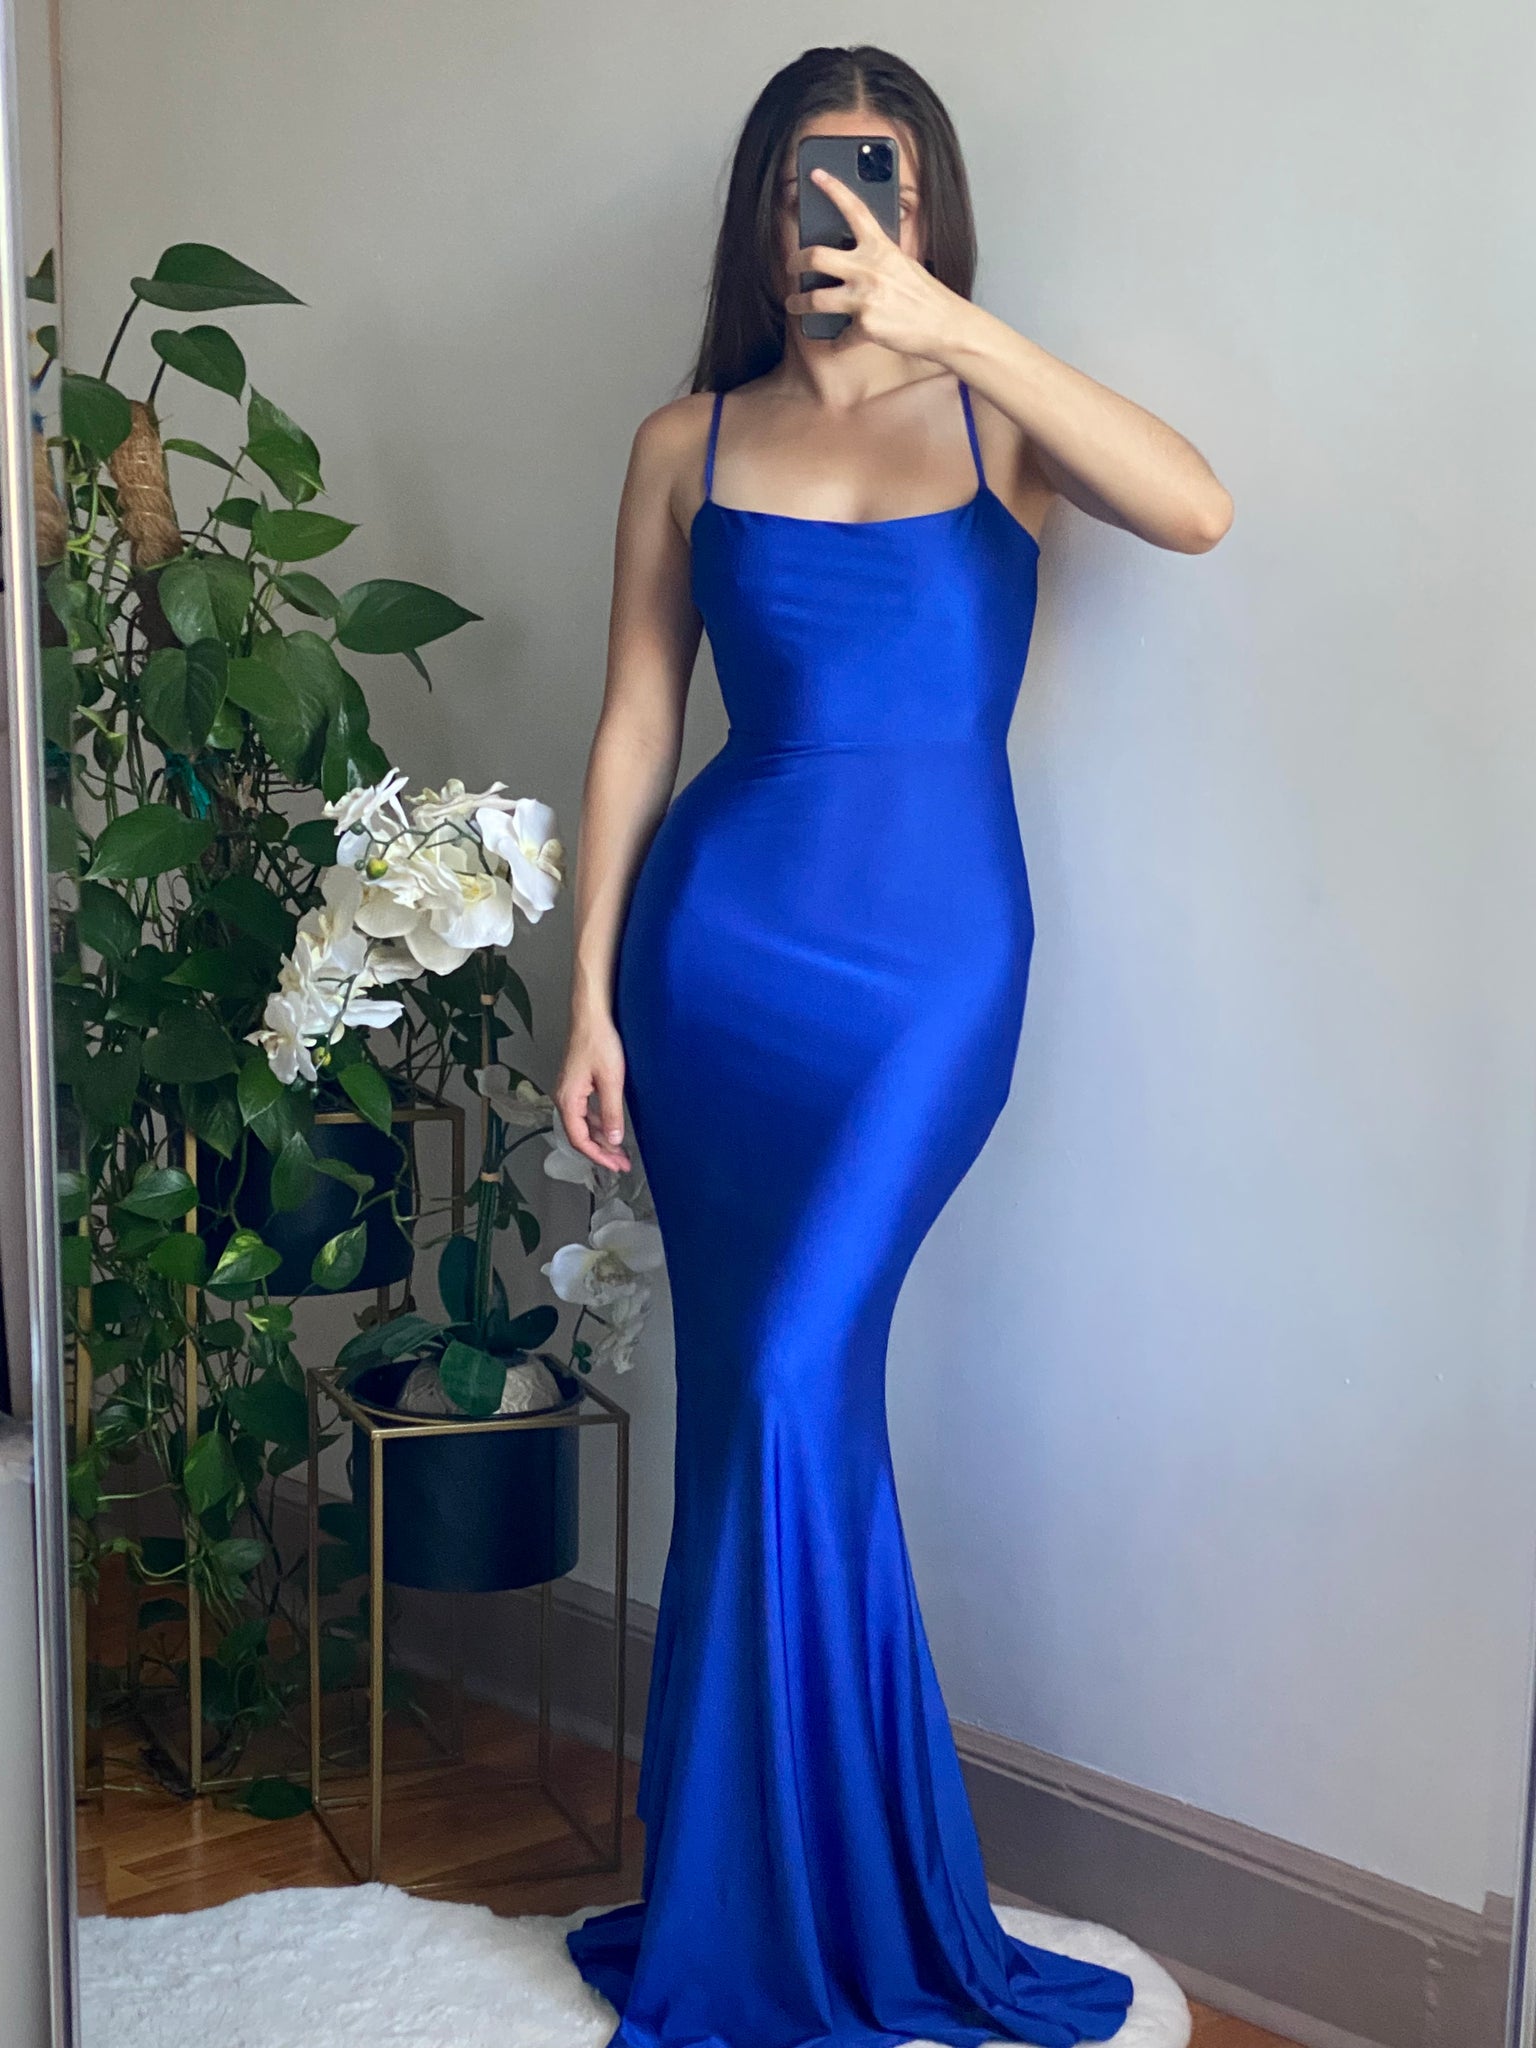 Adora Dress (Blue)